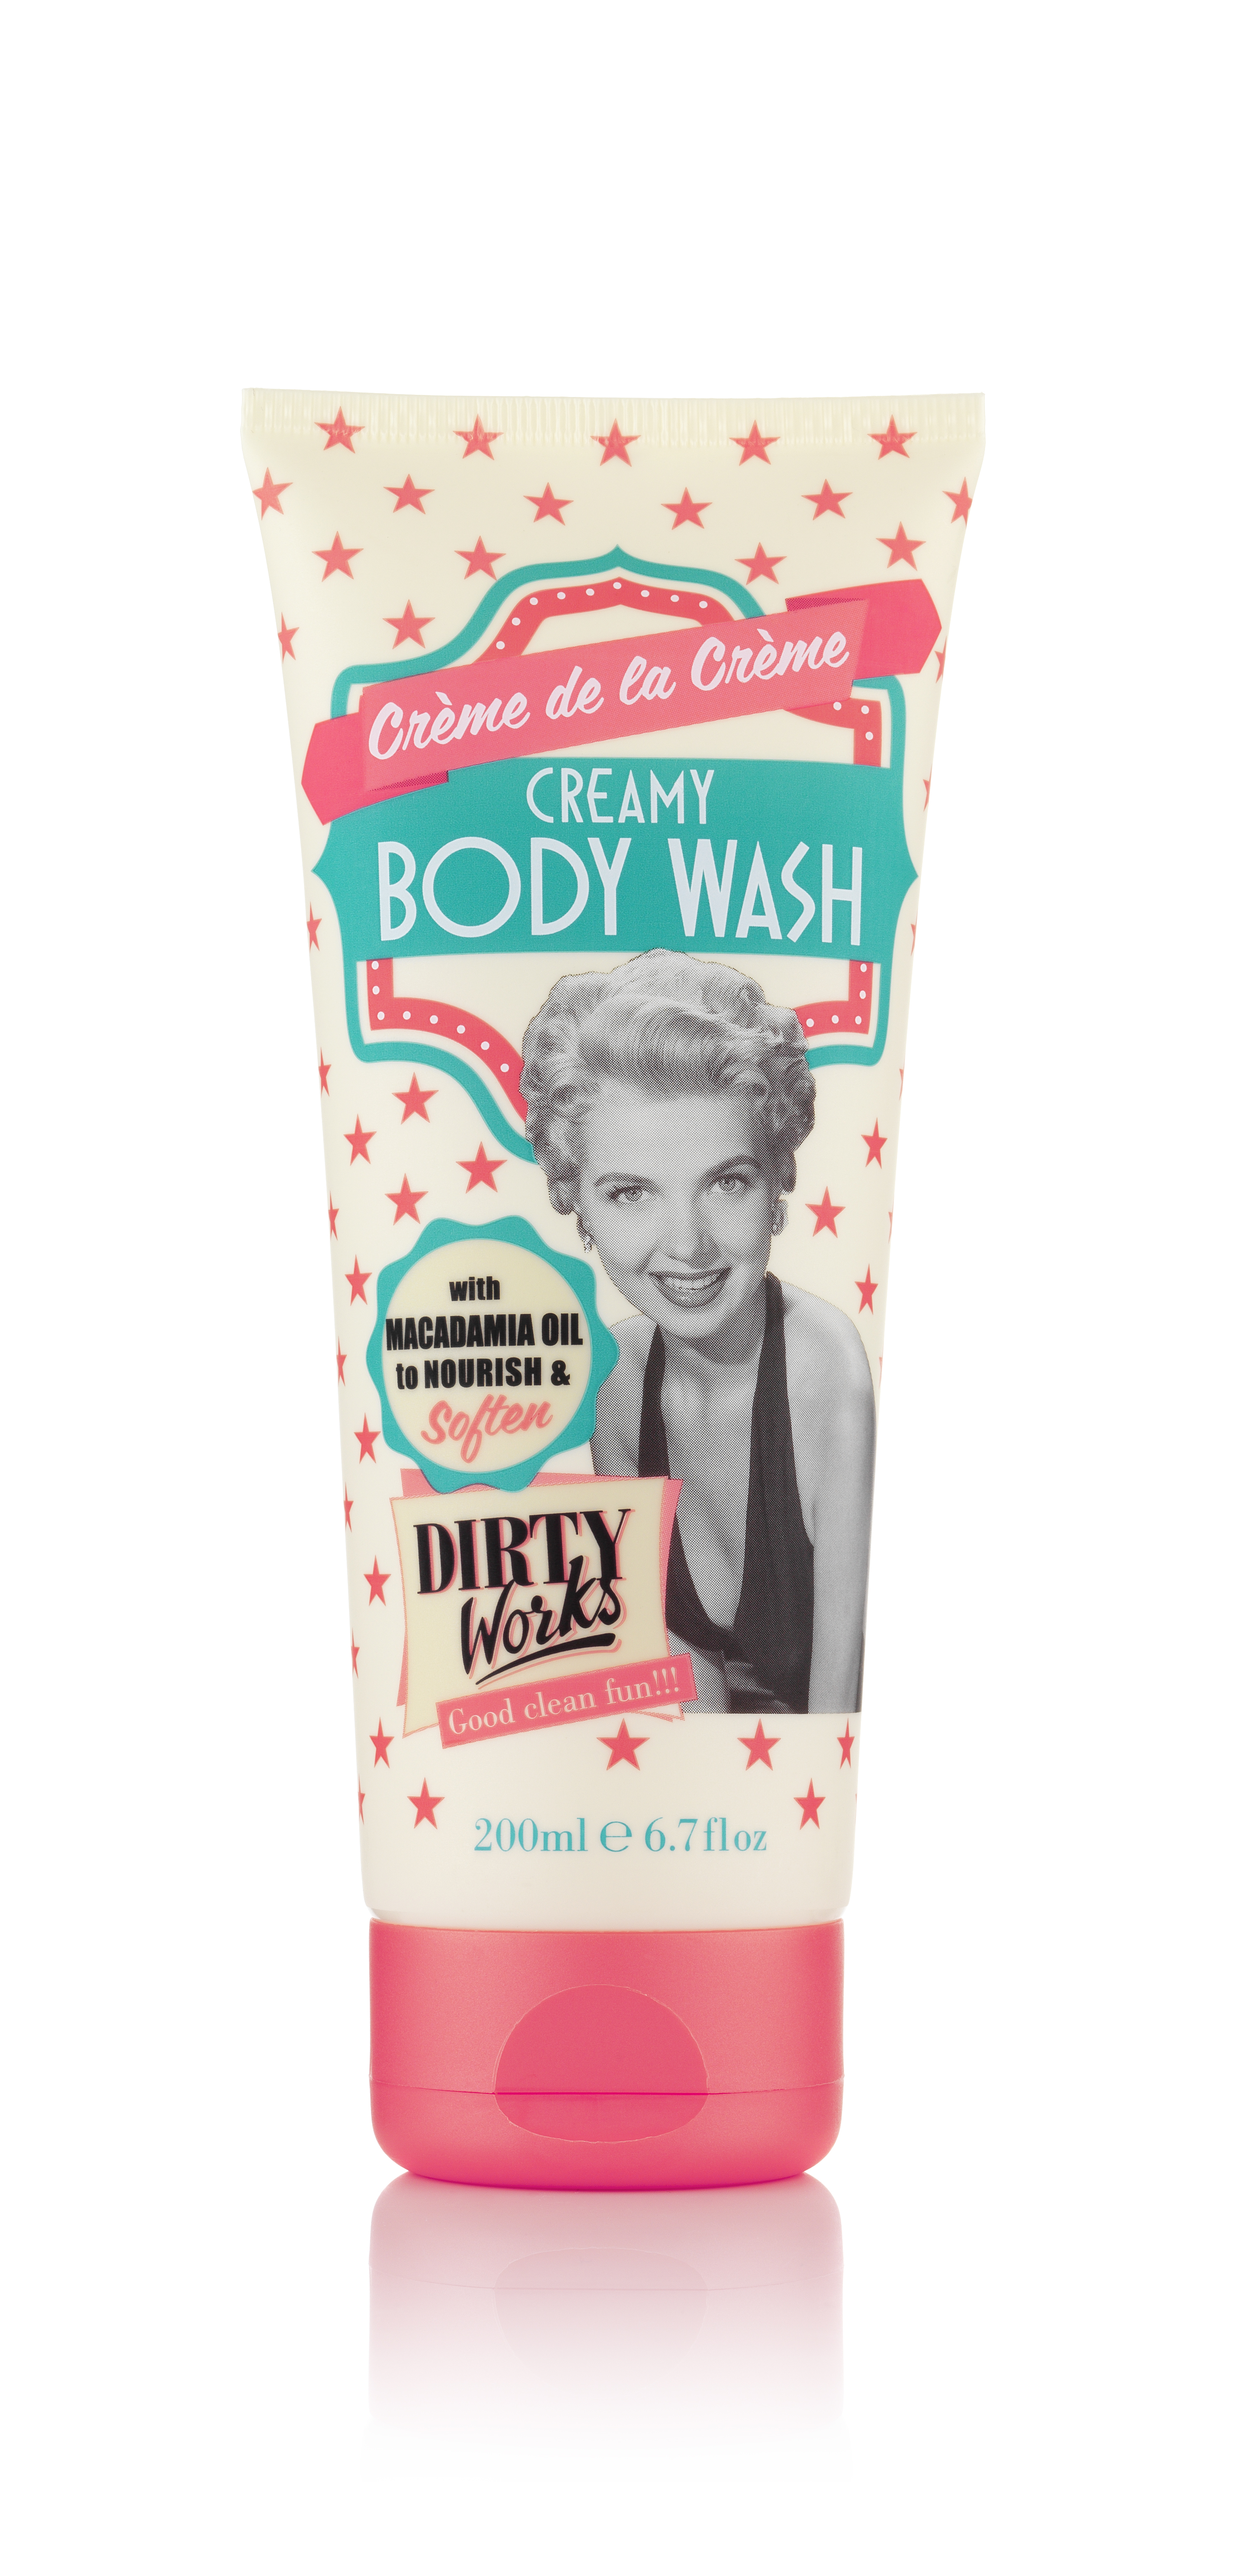 Dirty Works Crème de la Crème Creamy Body Wash 200ml